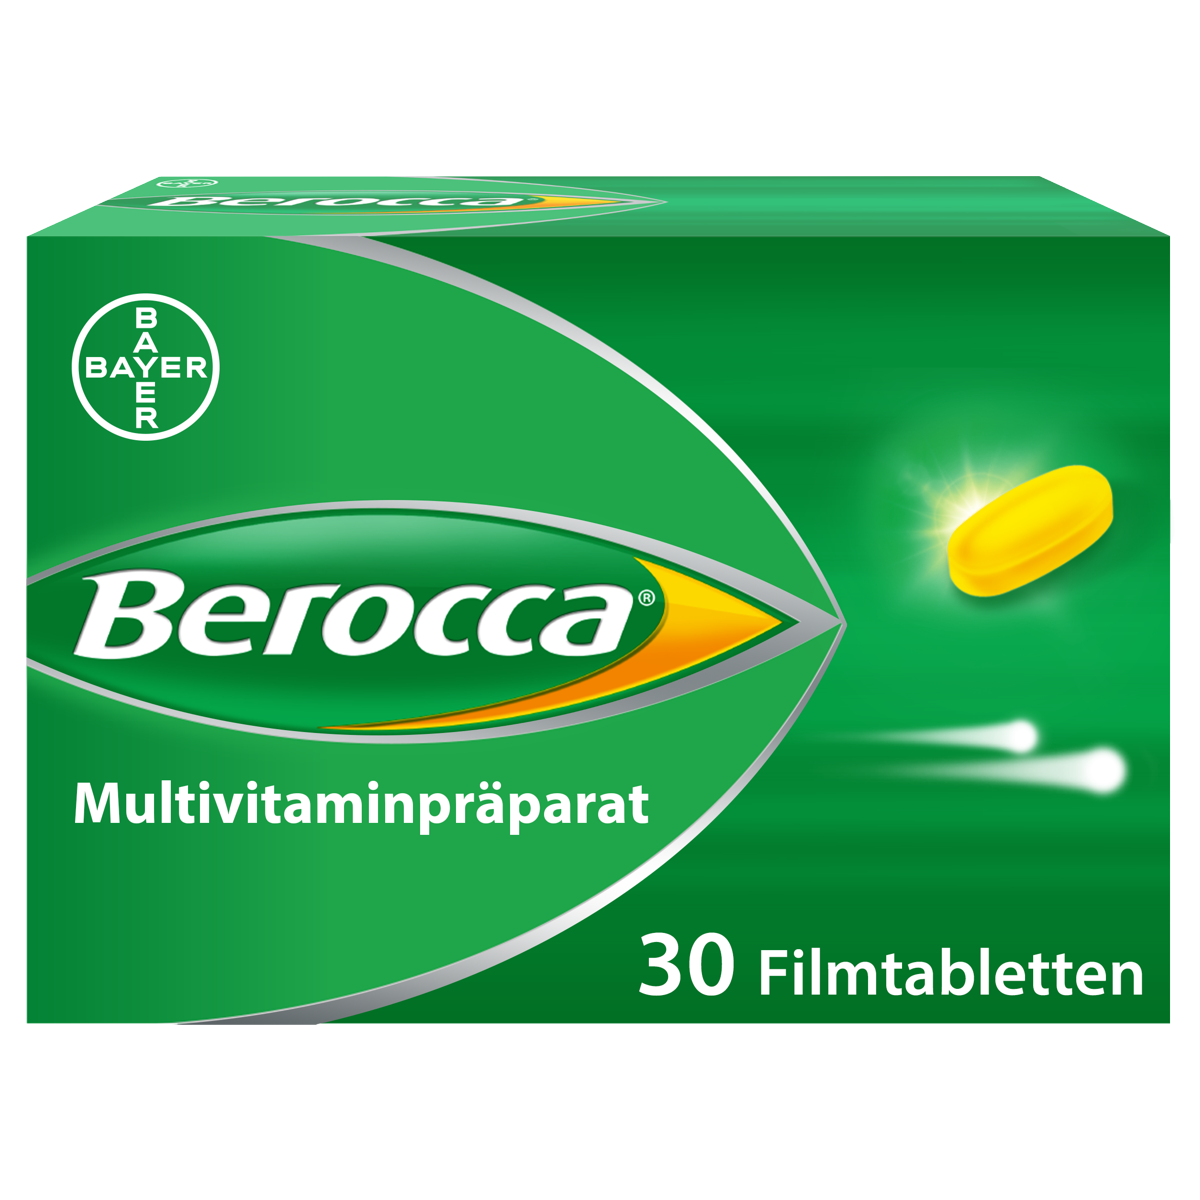 Berocca Filmtabletten 30 Stück